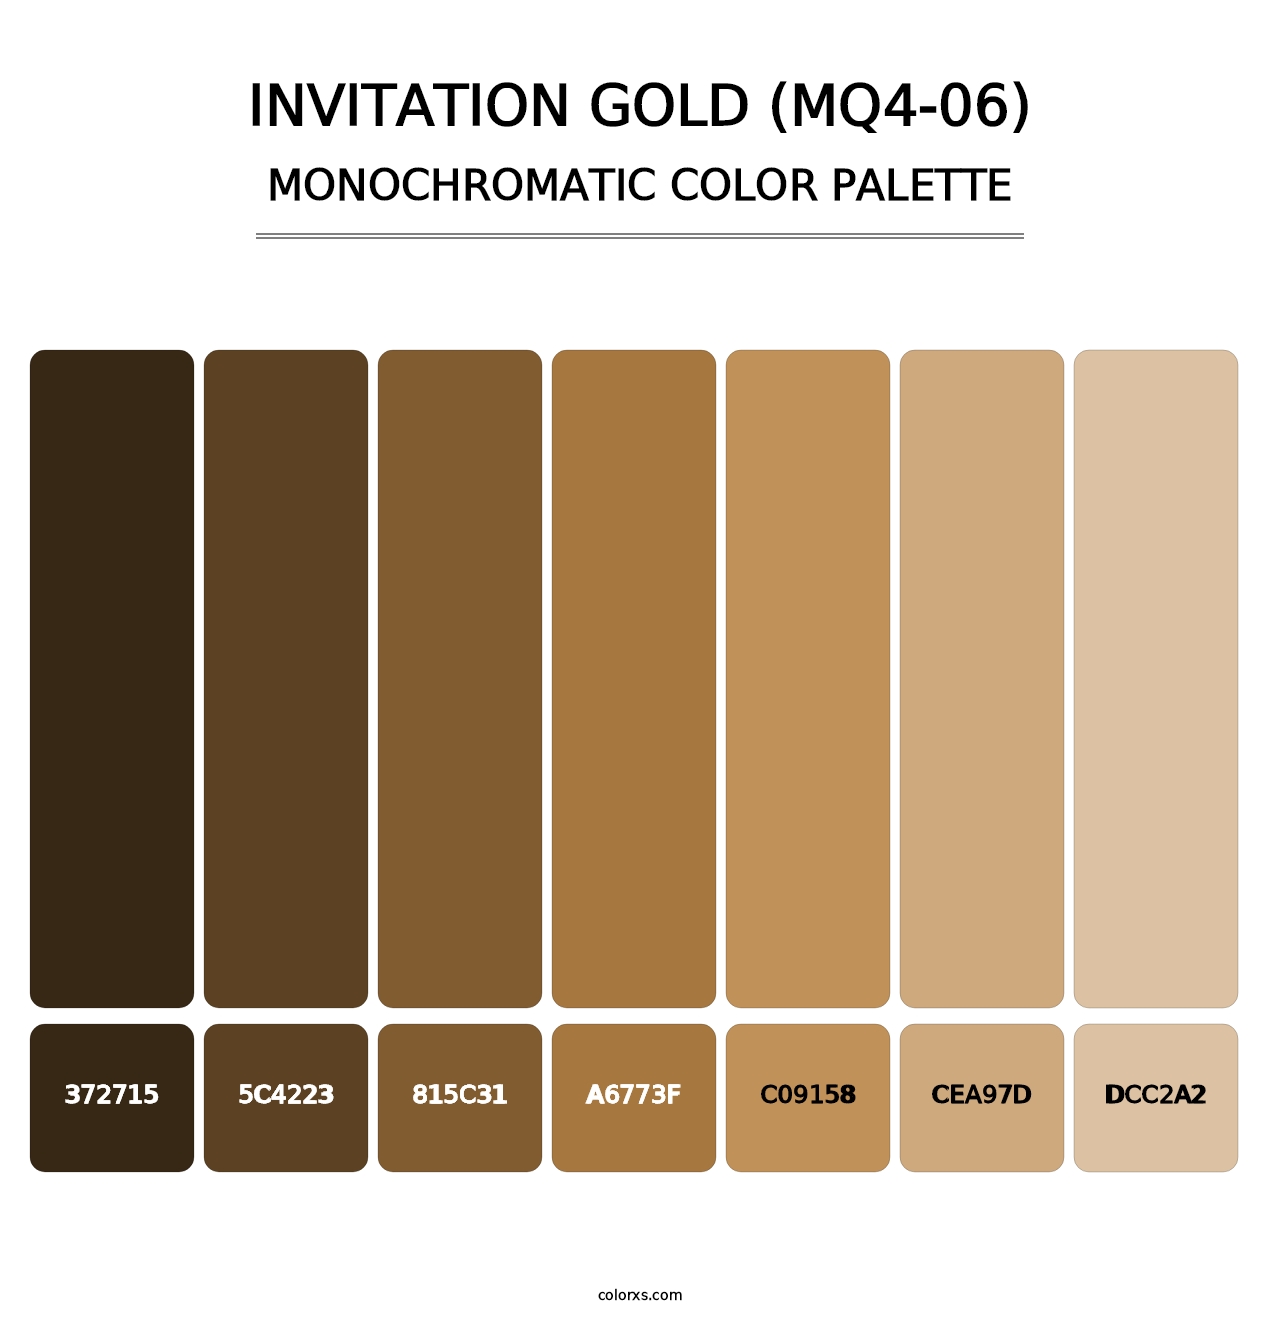 Invitation Gold (MQ4-06) - Monochromatic Color Palette